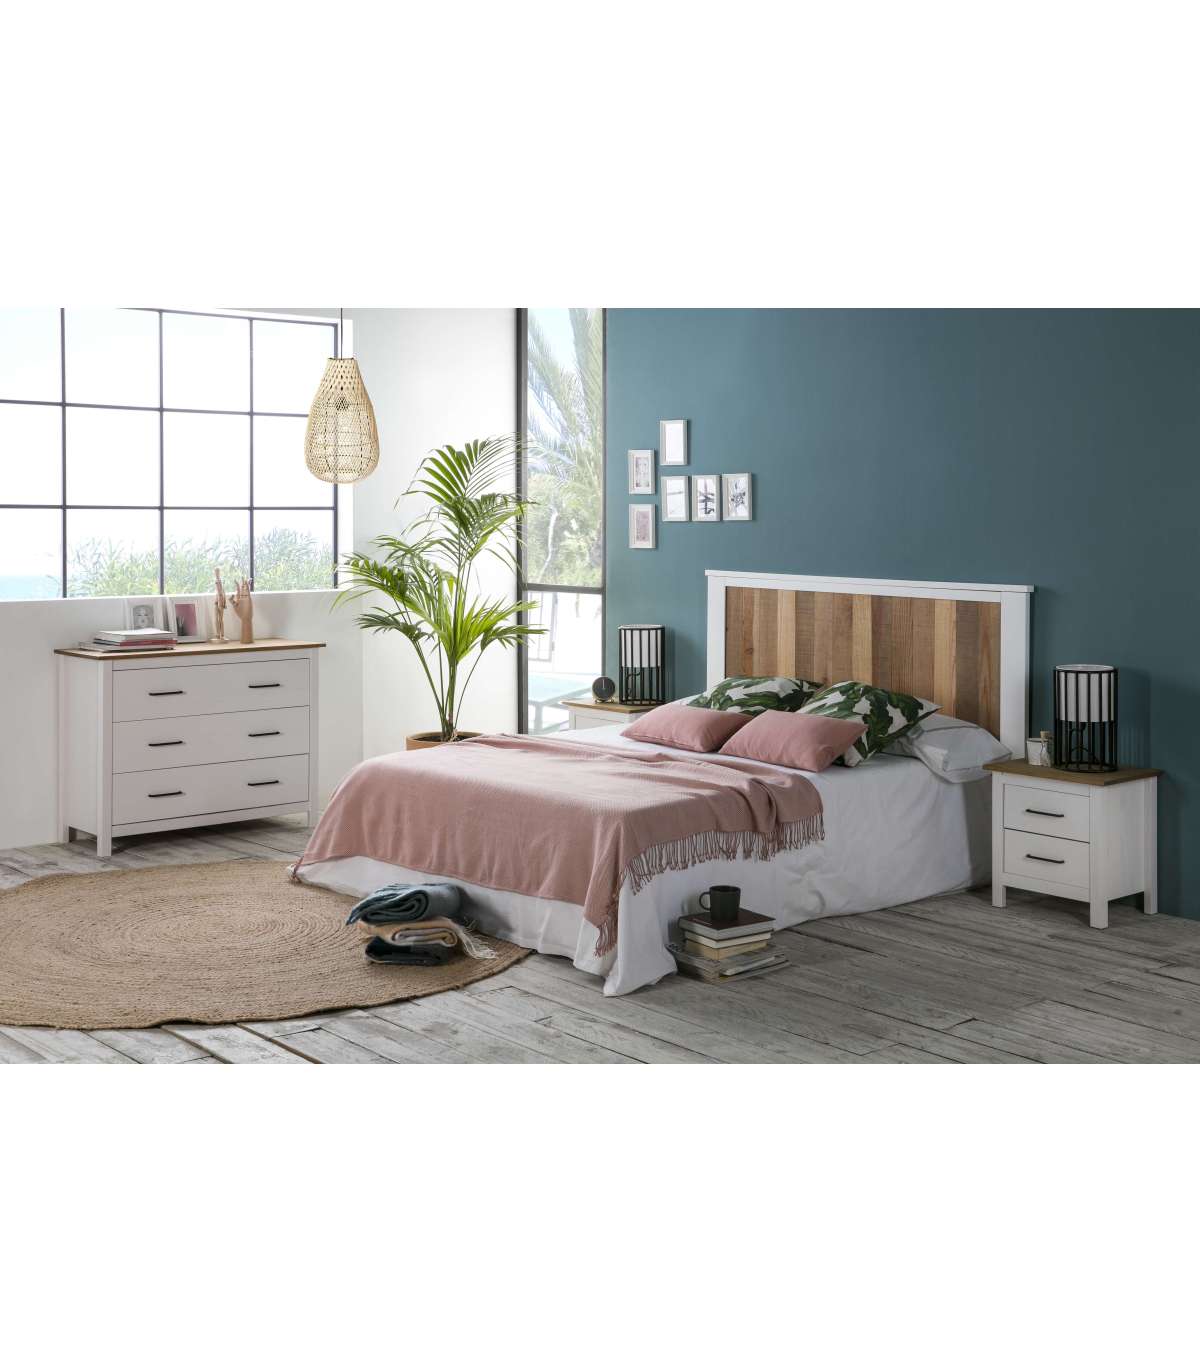 Muebles para Dormitorio - Completando tu Espacio con Estilo